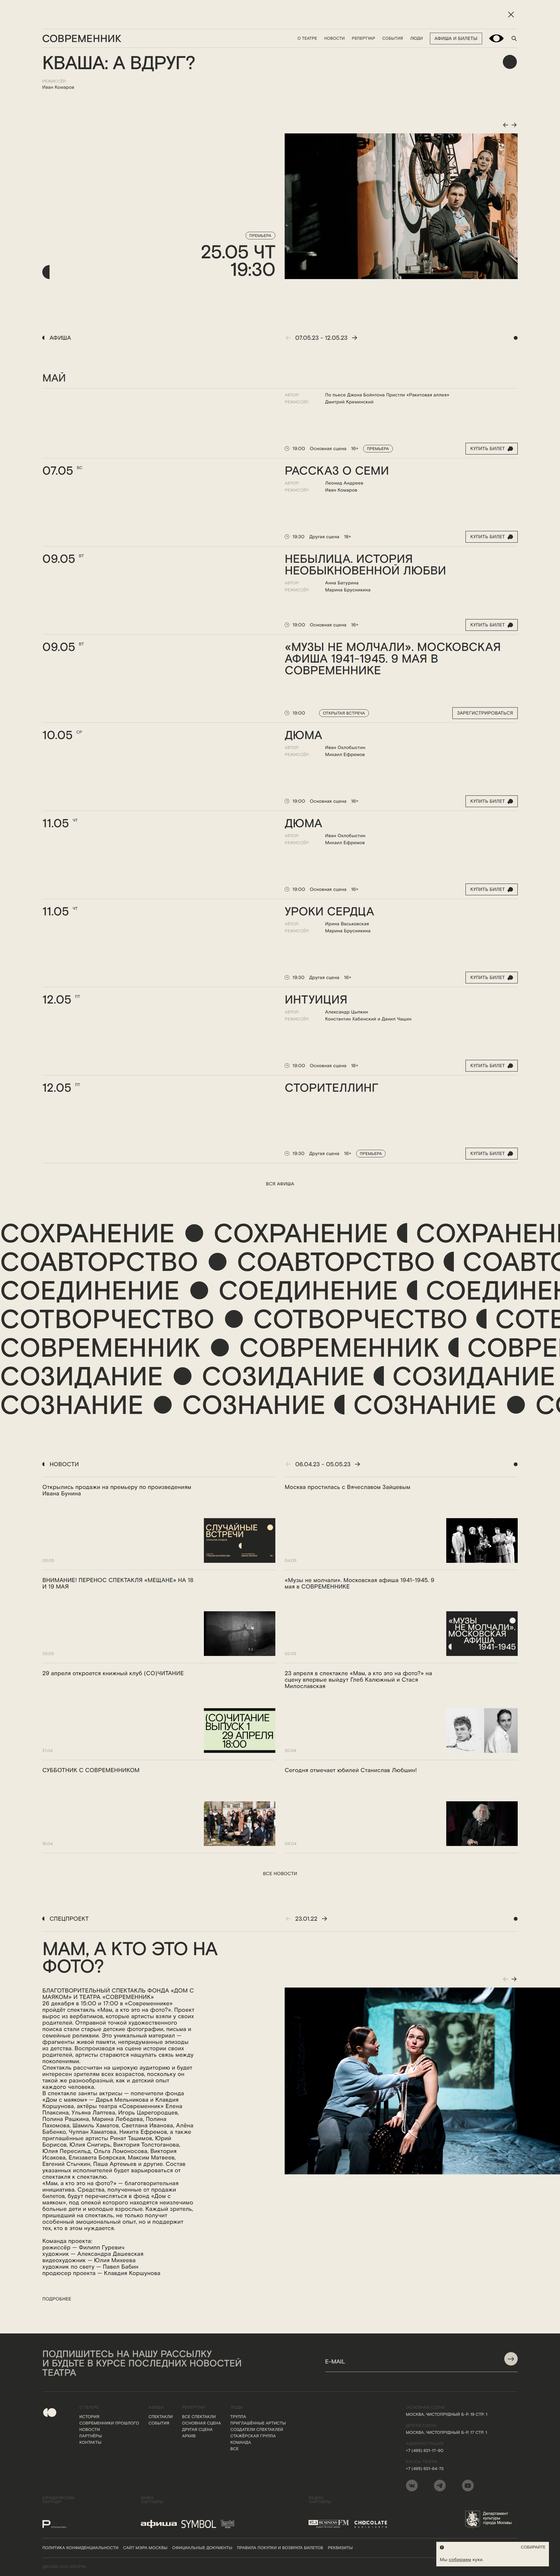 Пример sovremennik.ru сайта из рекламной выдачи